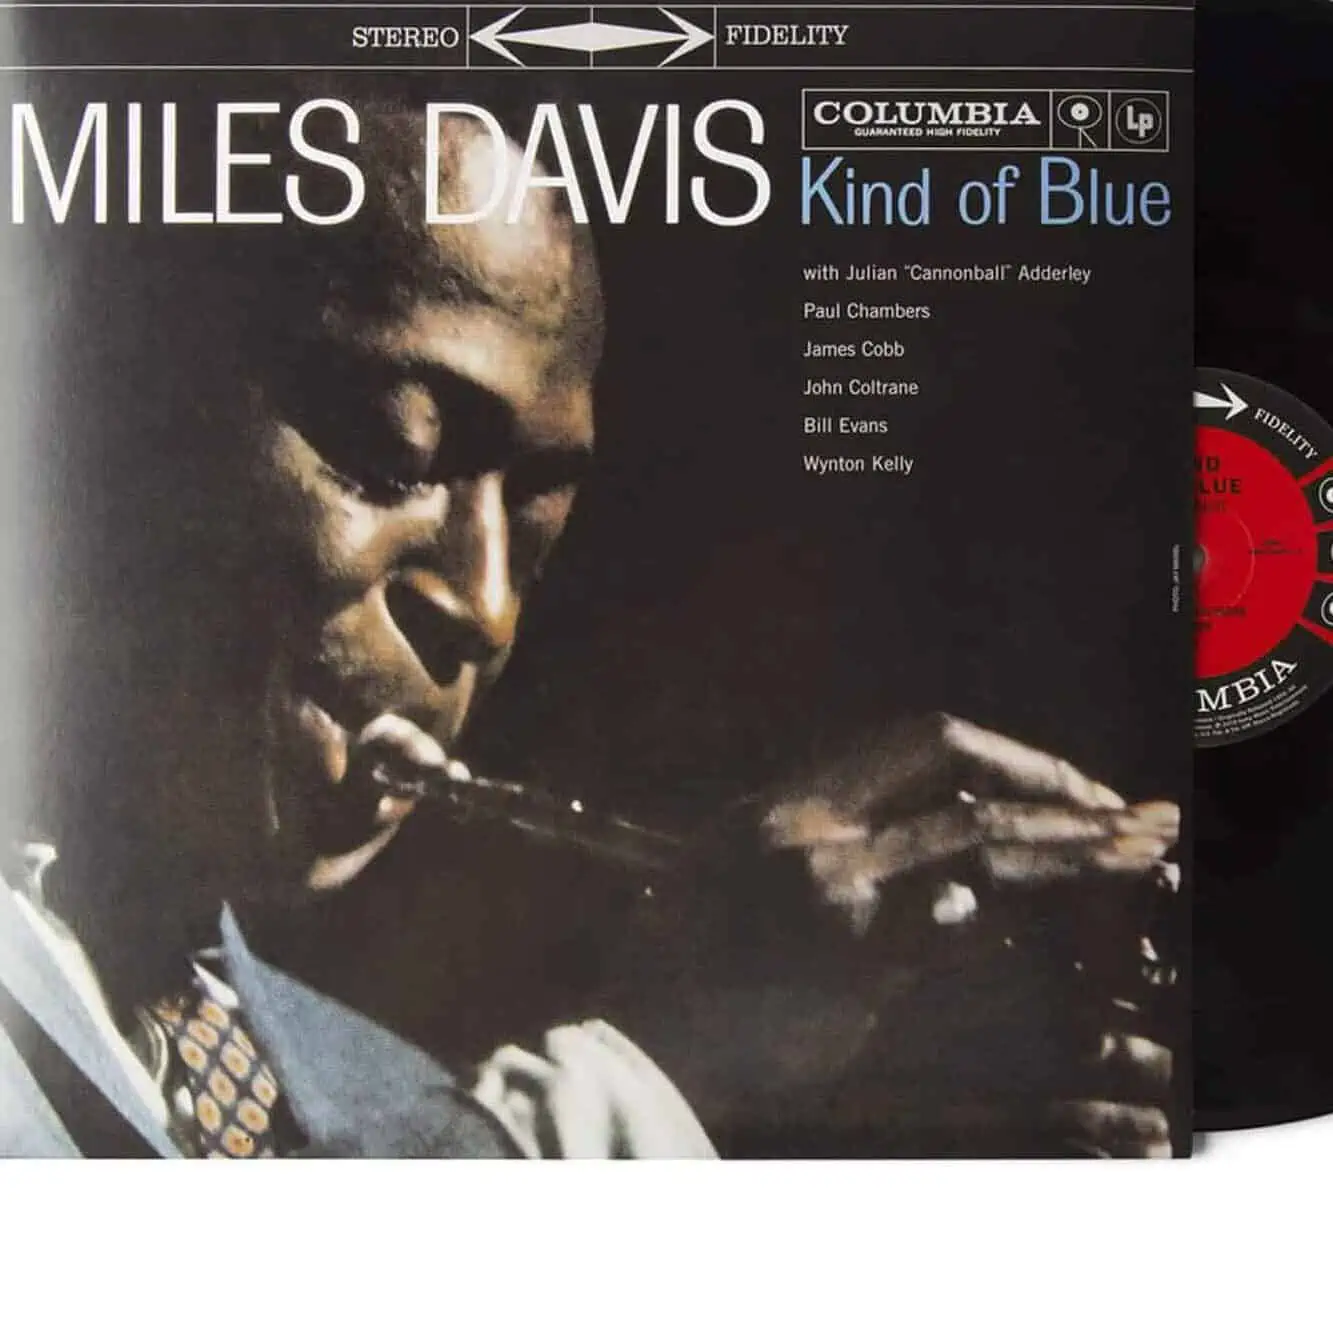 Miles Davis Kind of Blue on Vinyl